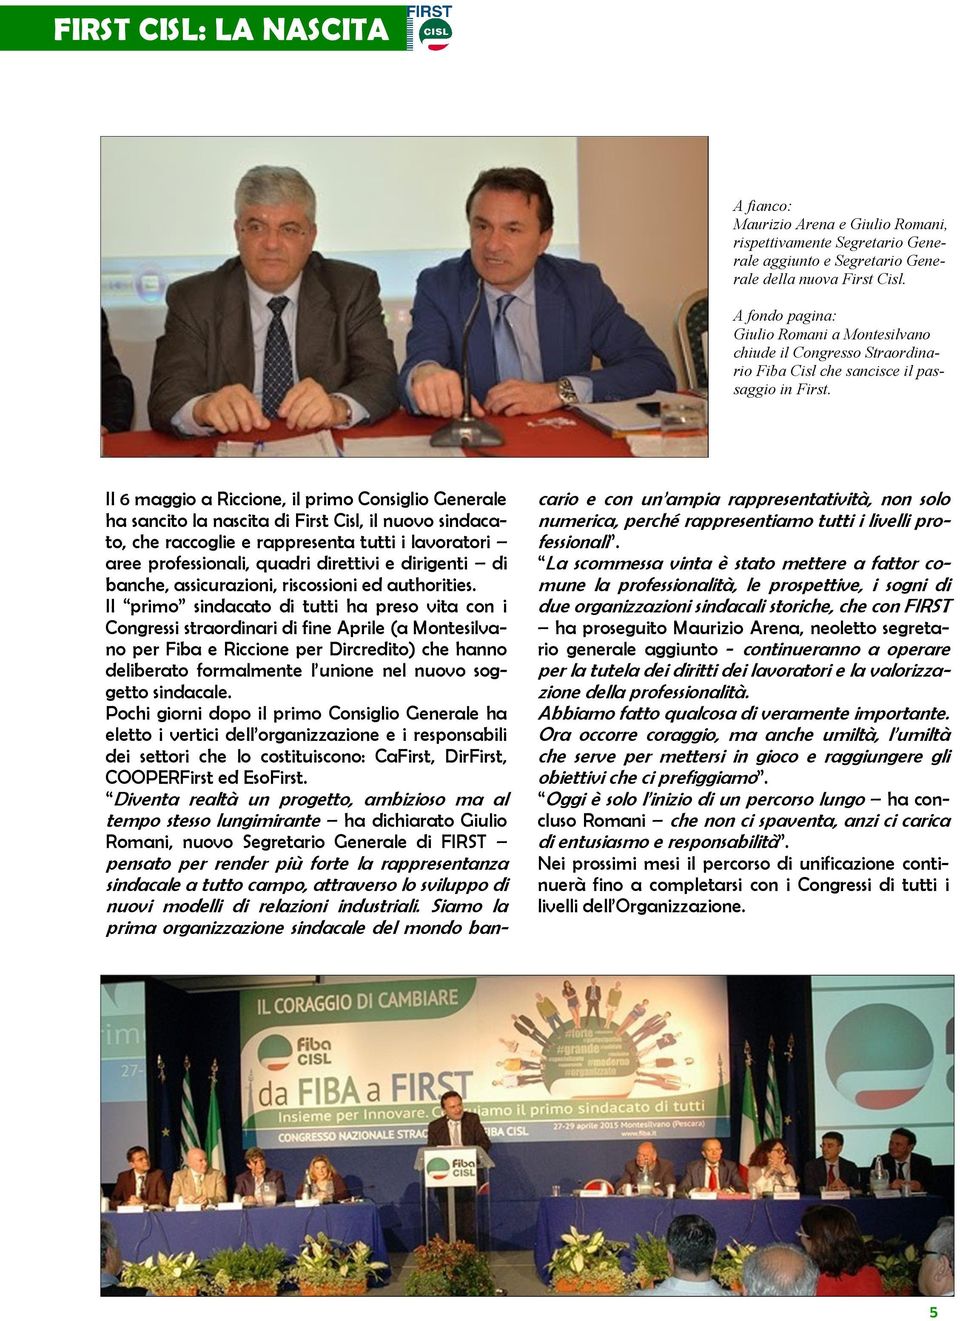 Il 6 maggio a Riccione, il primo Consiglio Generale ha sancito la nascita di First Cisl, il nuovo sindacato, che raccoglie e rappresenta tutti i lavoratori aree professionali, quadri direttivi e